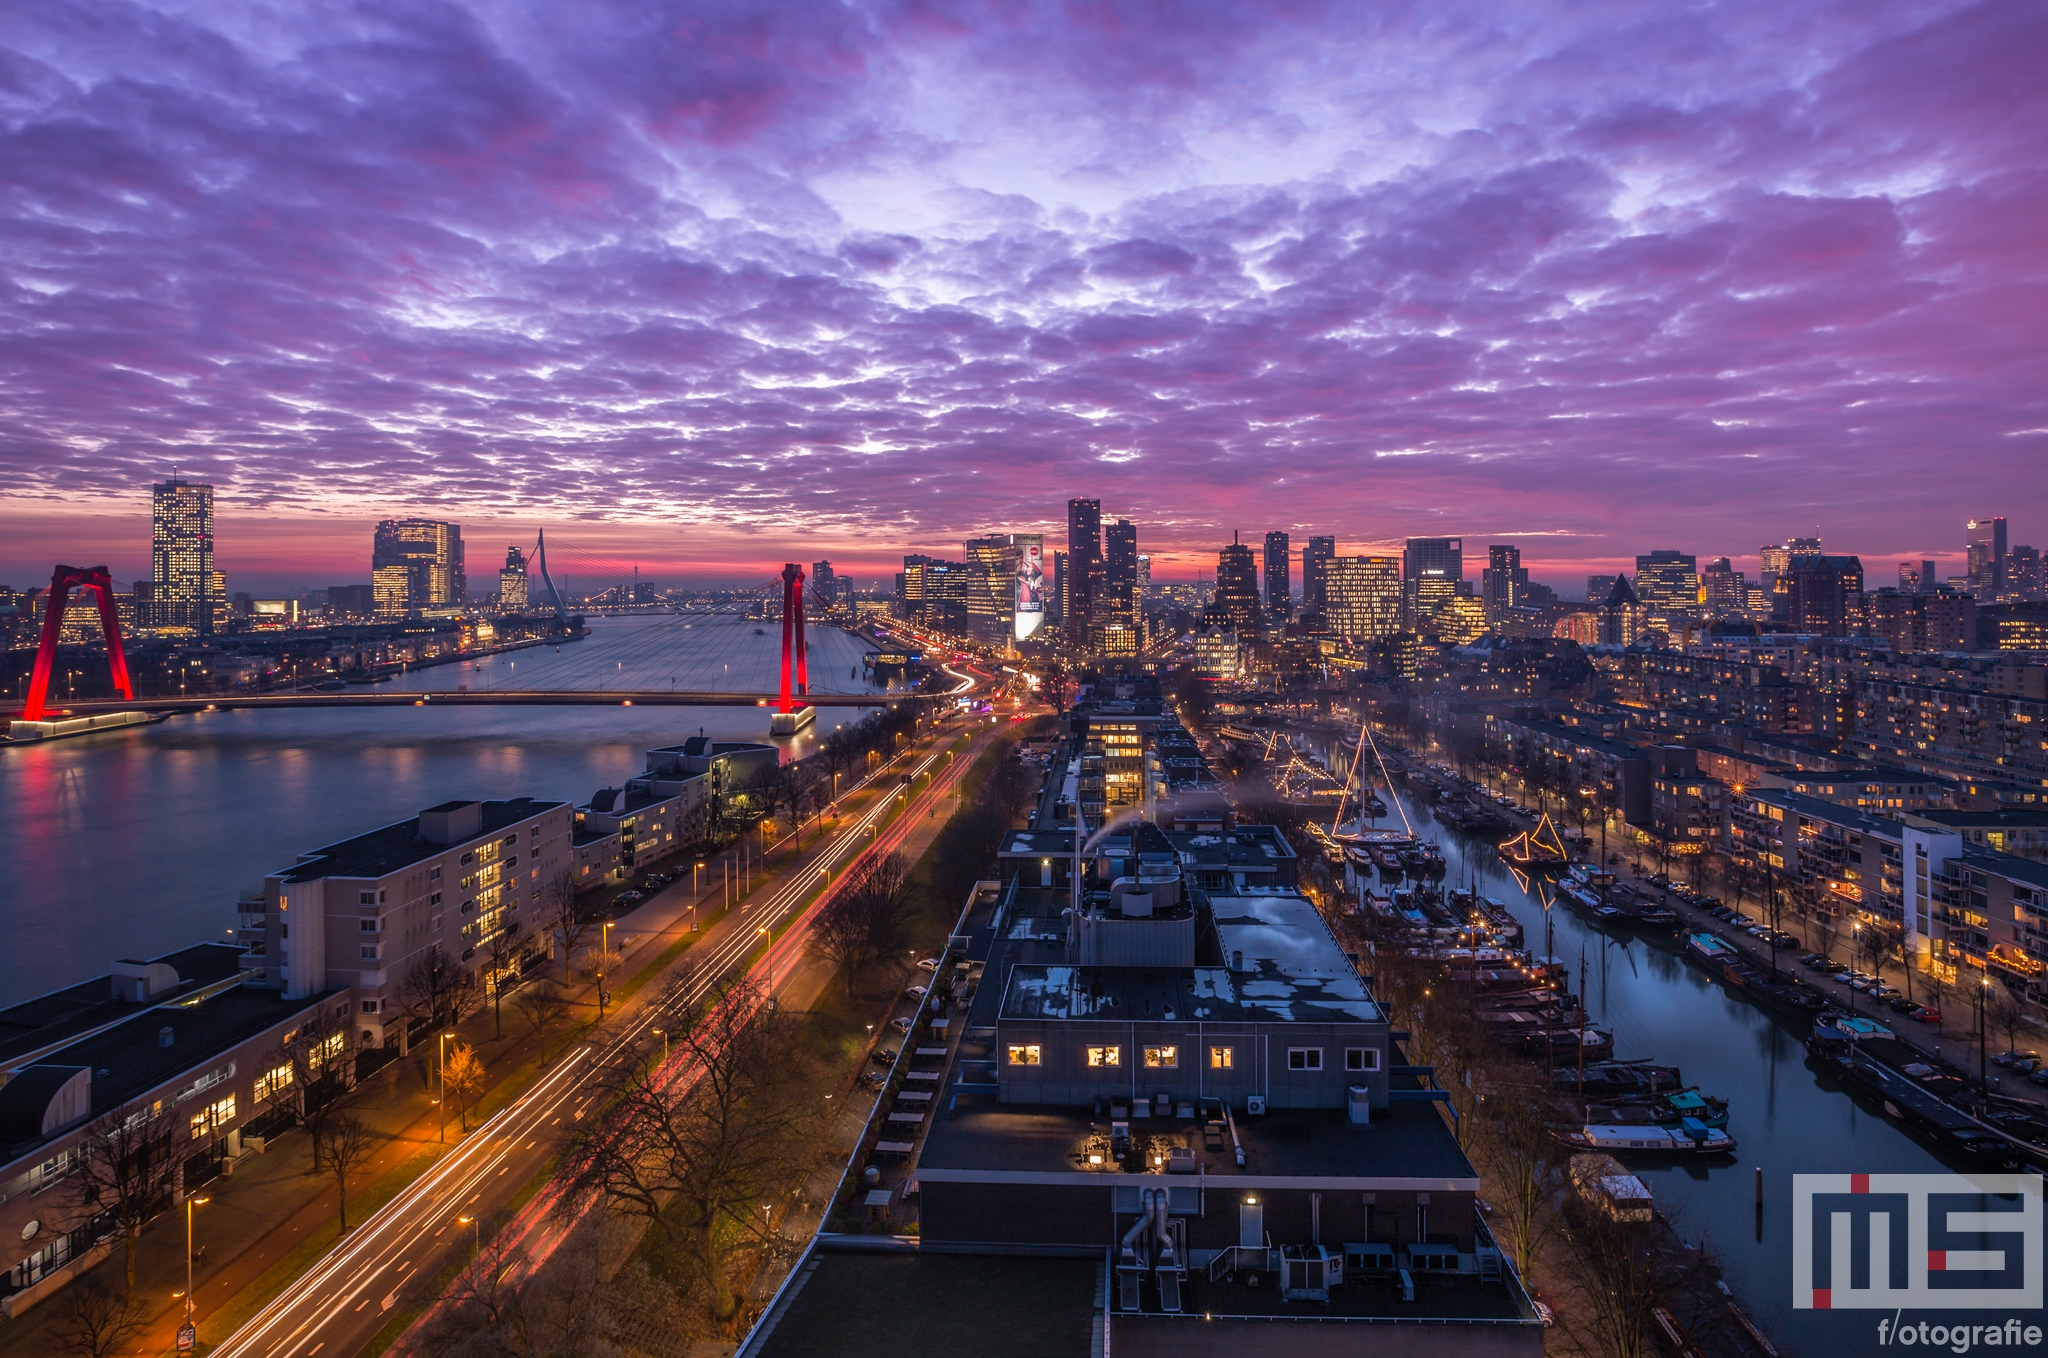 Te Koop | De skyline van Rotterdam tijdens de zonsondergang